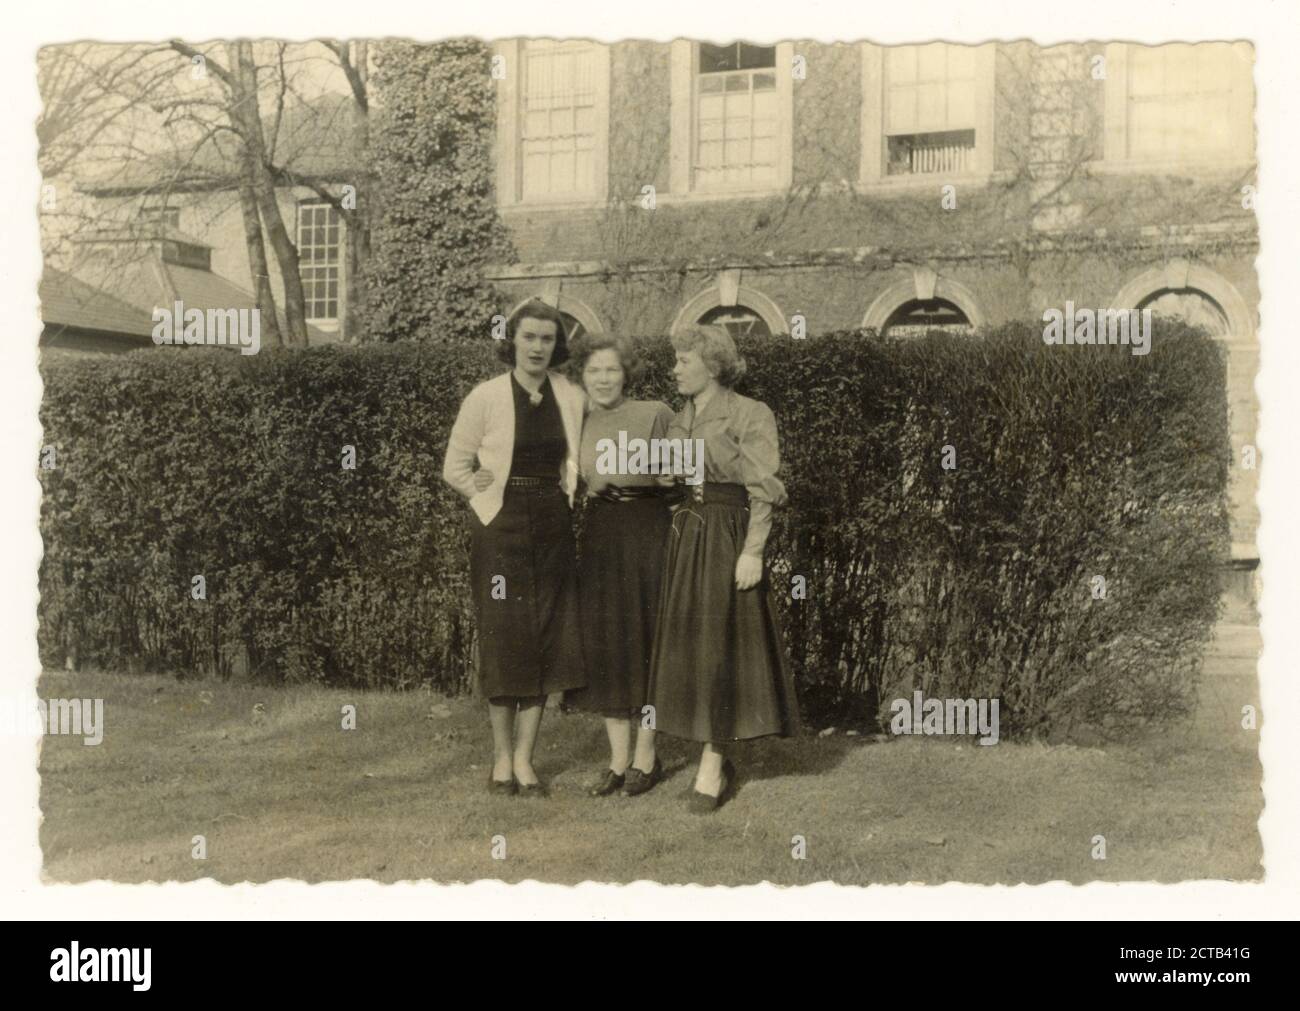 Photographies des infirmières de l'époque des années 1950 en uniforme, infirmières hors service, amis, posant pour une photographie ensemble à l'extérieur dans les terrains de l'hôpital, hébergement des infirmières, Royaume-Uni vers 1955 Banque D'Images